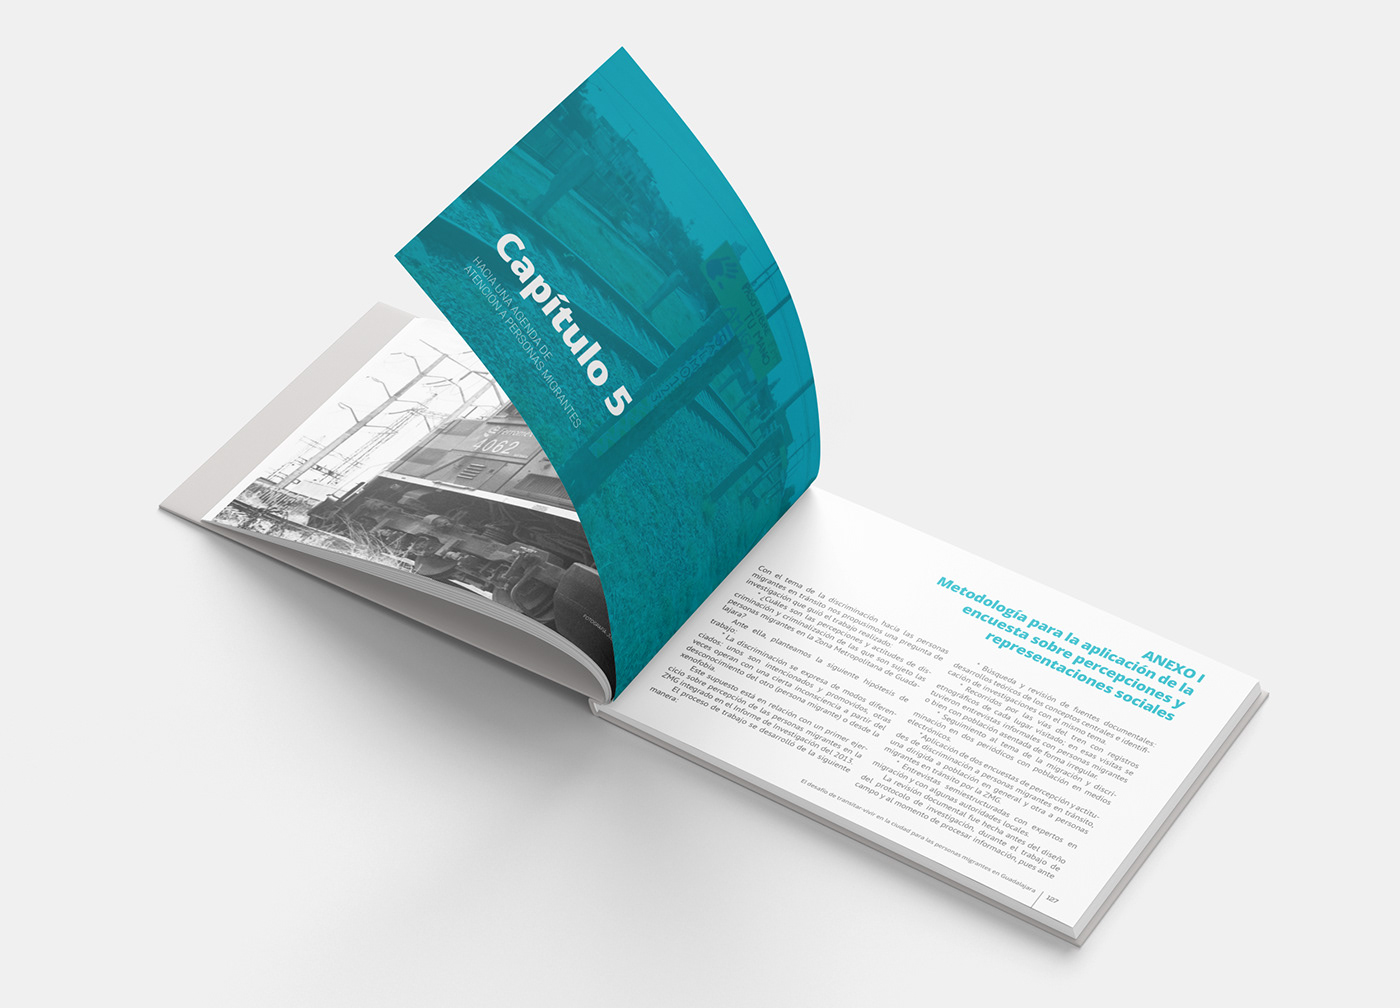 Diseño editorial informe anual info design annual report migration investigation mexico Centroamerica book non profit